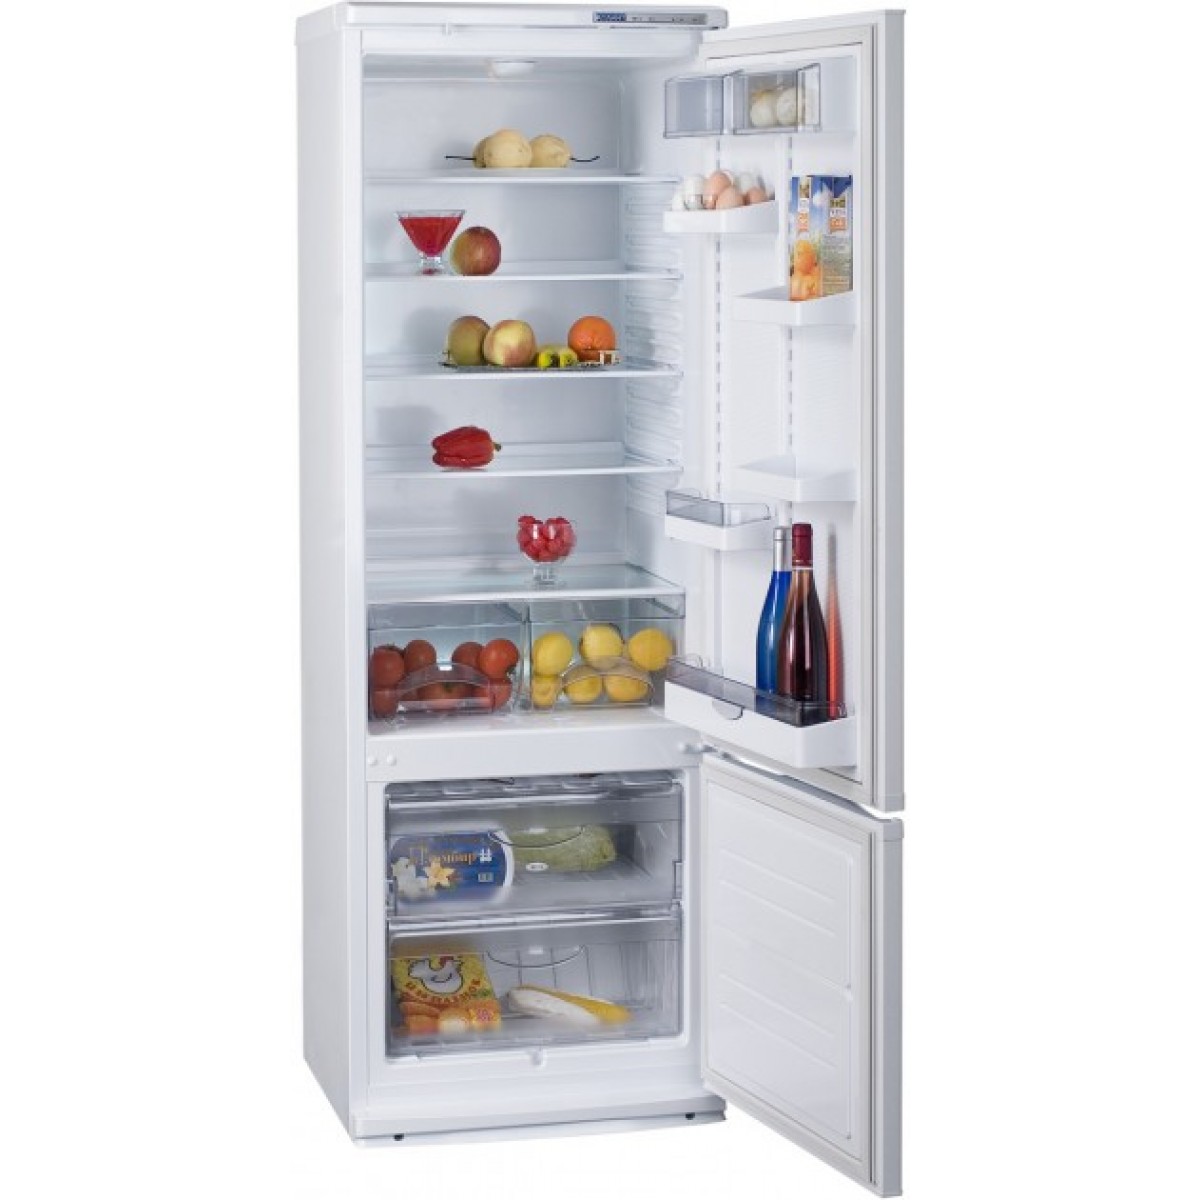 Атлант холодильник двухкамерный внимание. Холодильник ATLANT хм 4013-022. Холодильник хм 4013-022 Атлант 328л. Атлант хм 4013-022. Холодильник Атлант 4013-022.